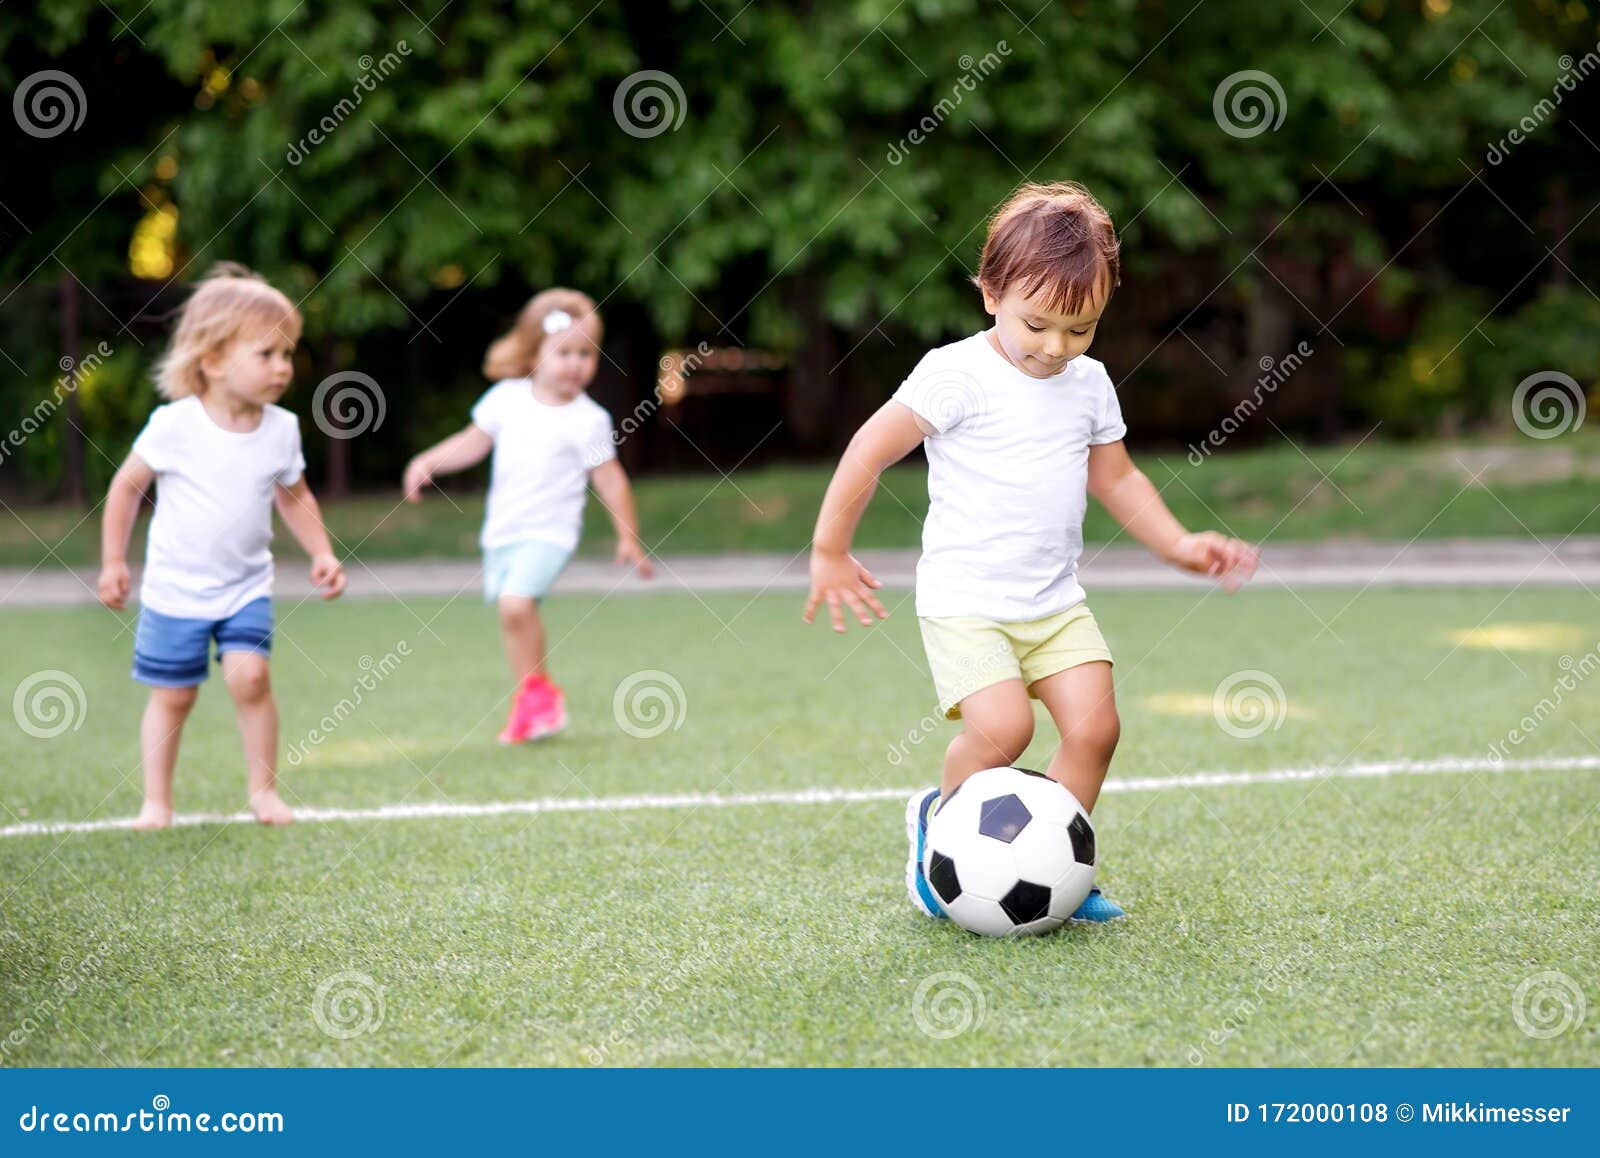 Perto da bola de futebol no campo verde  os jogadores vão jogar juntos